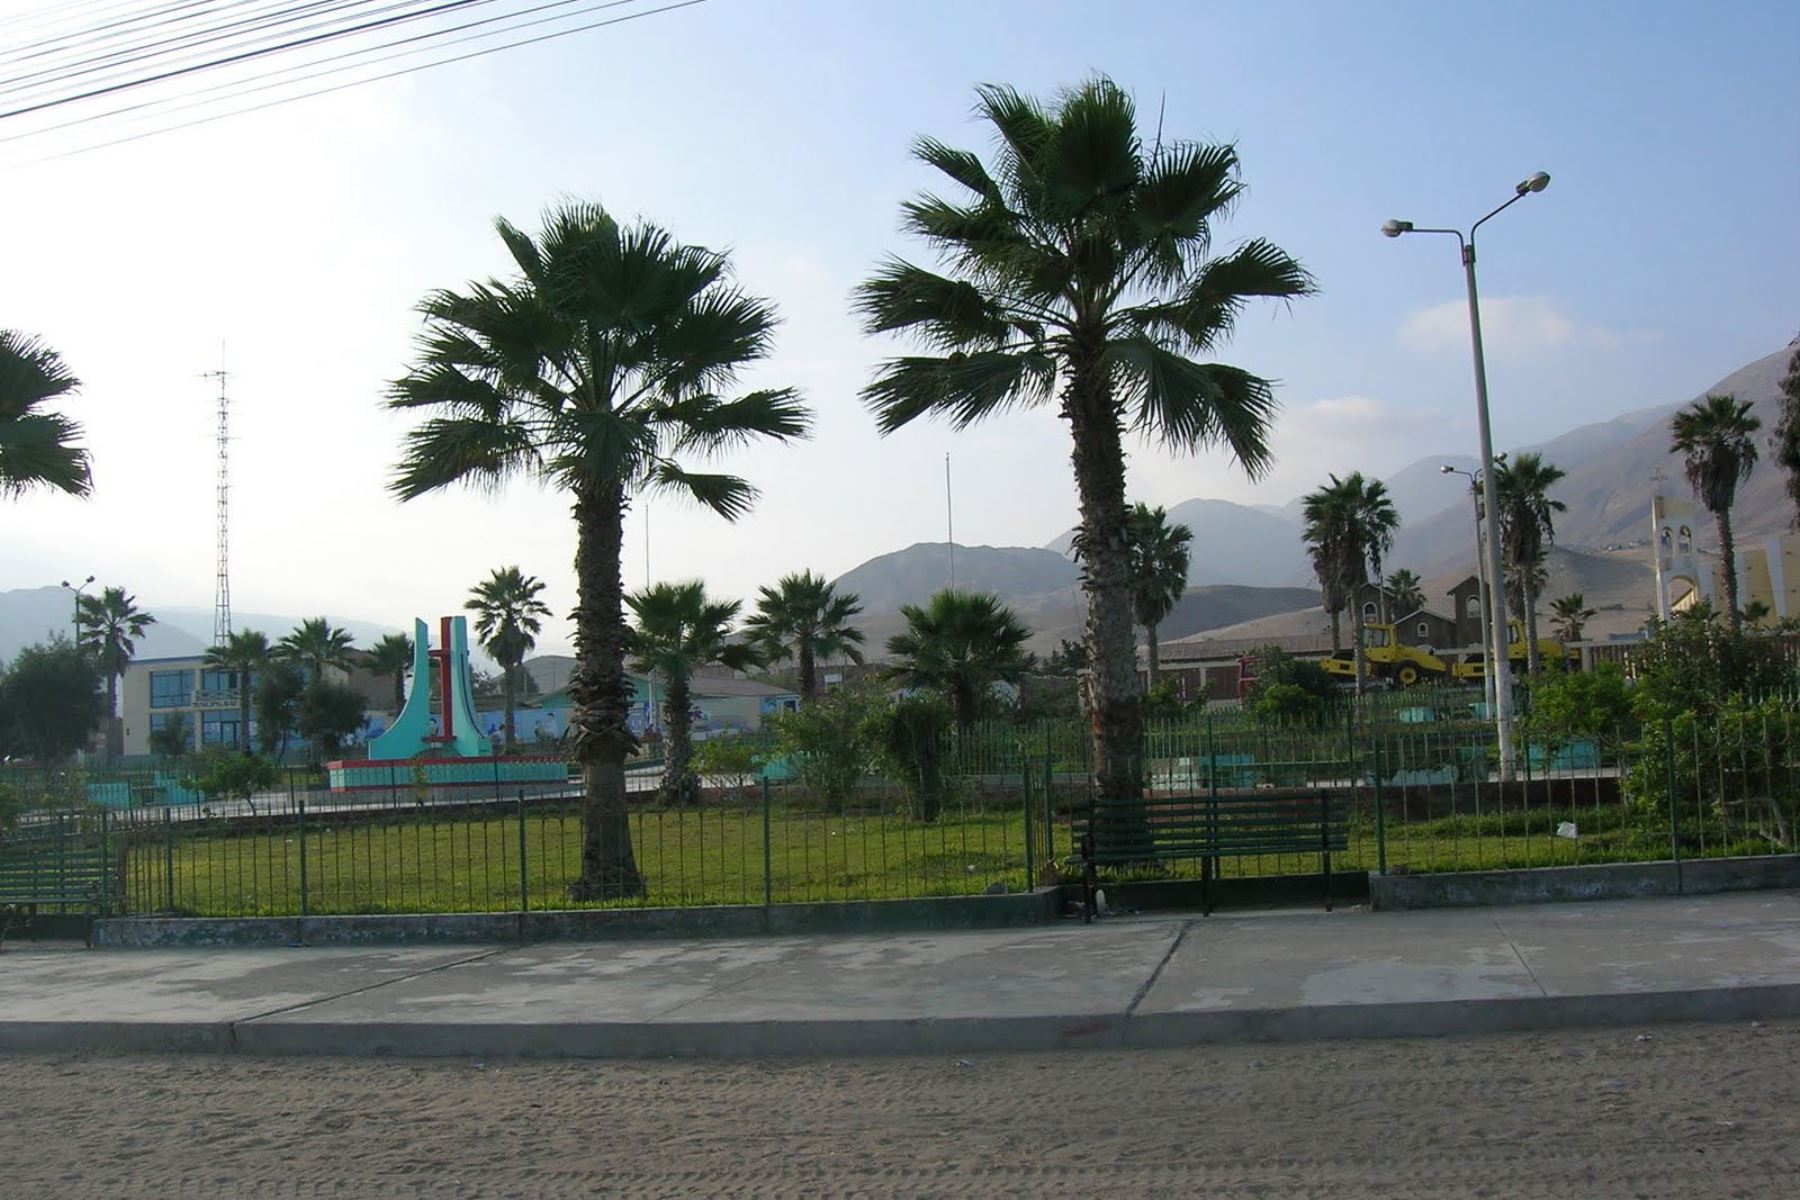 Plaza del distrito de Atico, ubicado en la provincia de Caravelí, región Arequipa. Foto: difusión.